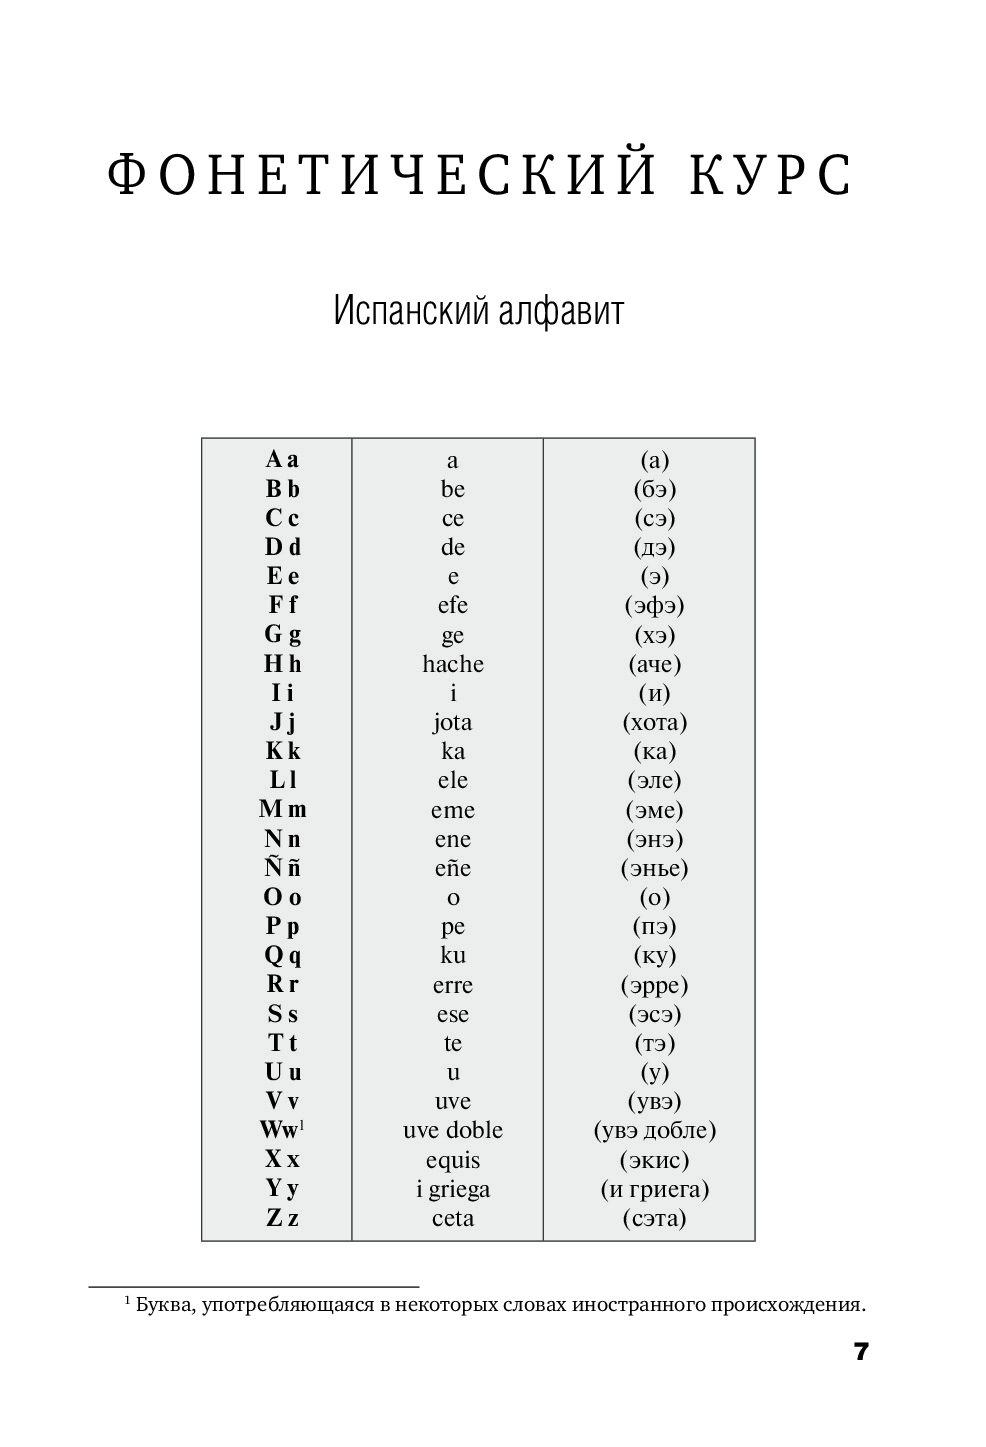 Транскрипция испанских слов